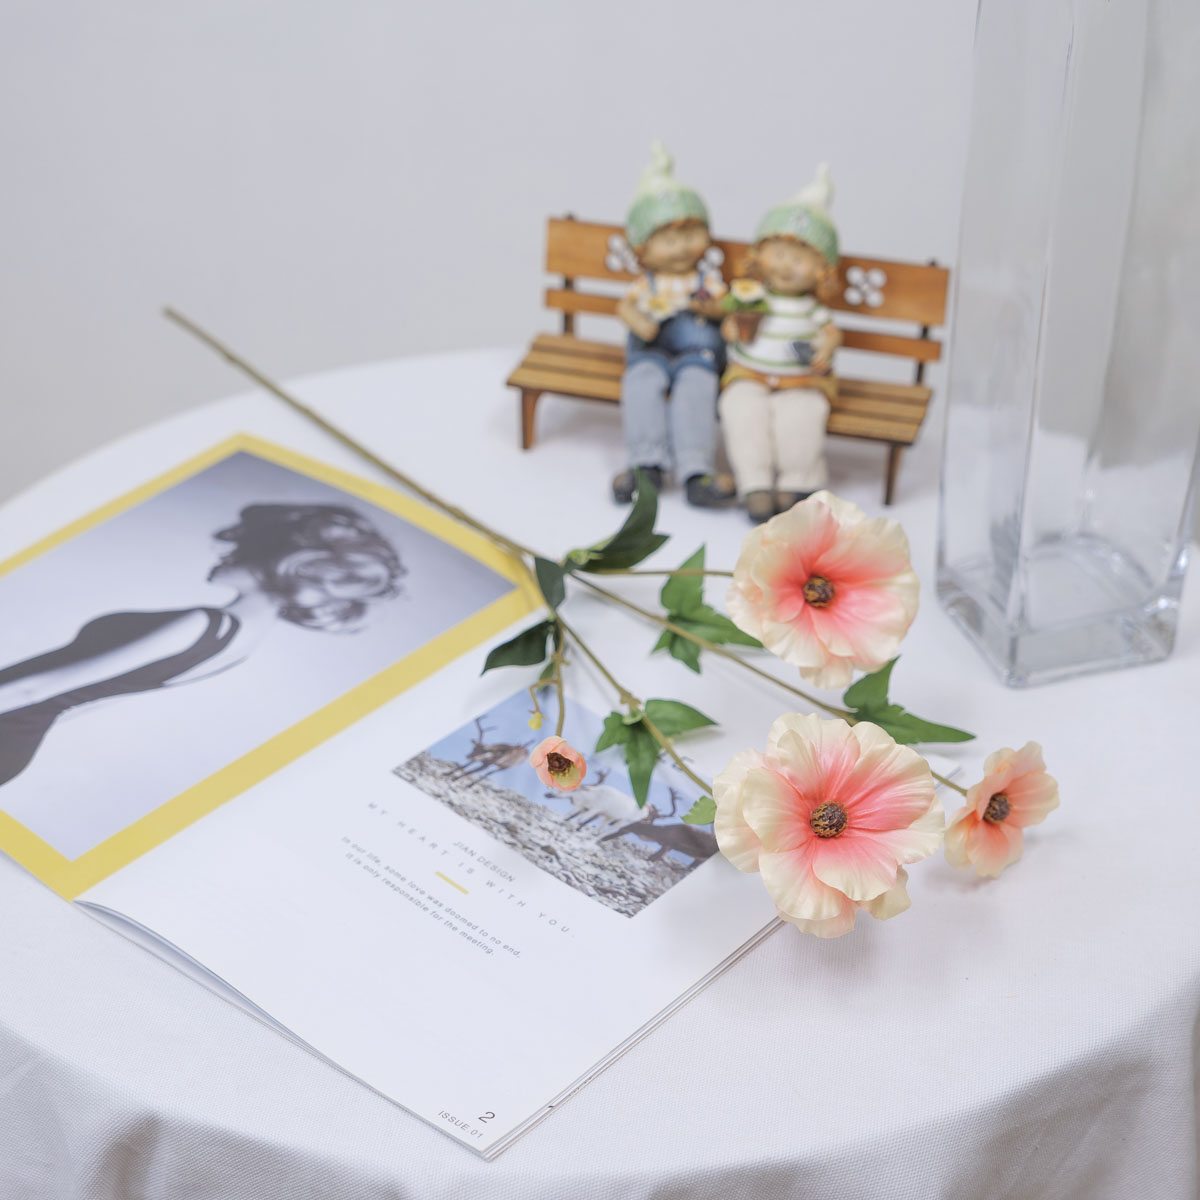 버터플라이 라넌큘러스 꽃 가지 65cm 피치 테이블에놓은사진